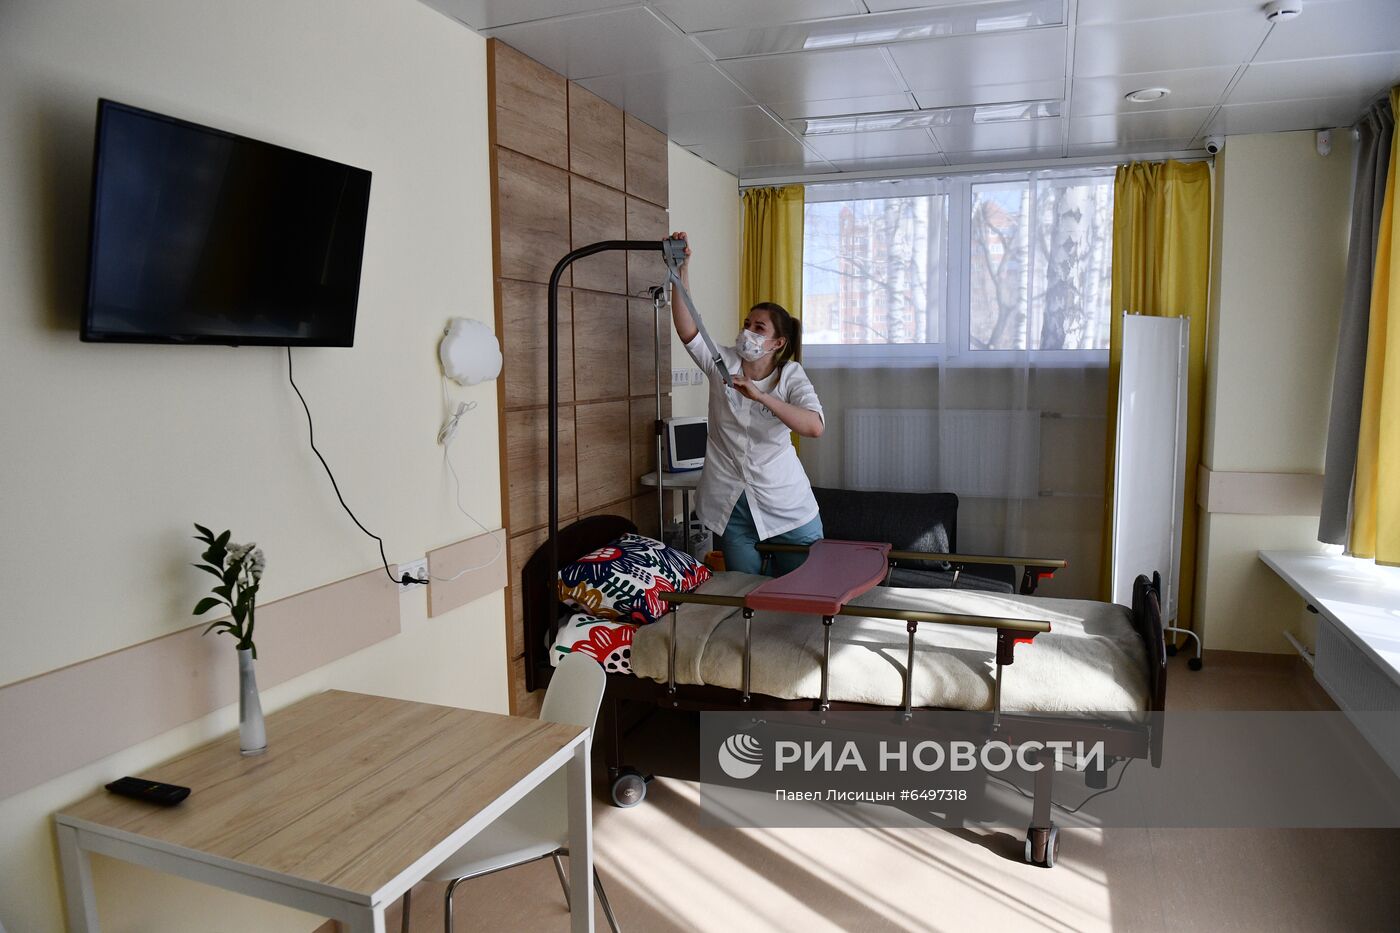 Открытие первого детского хосписа в Уральском федеральном округе